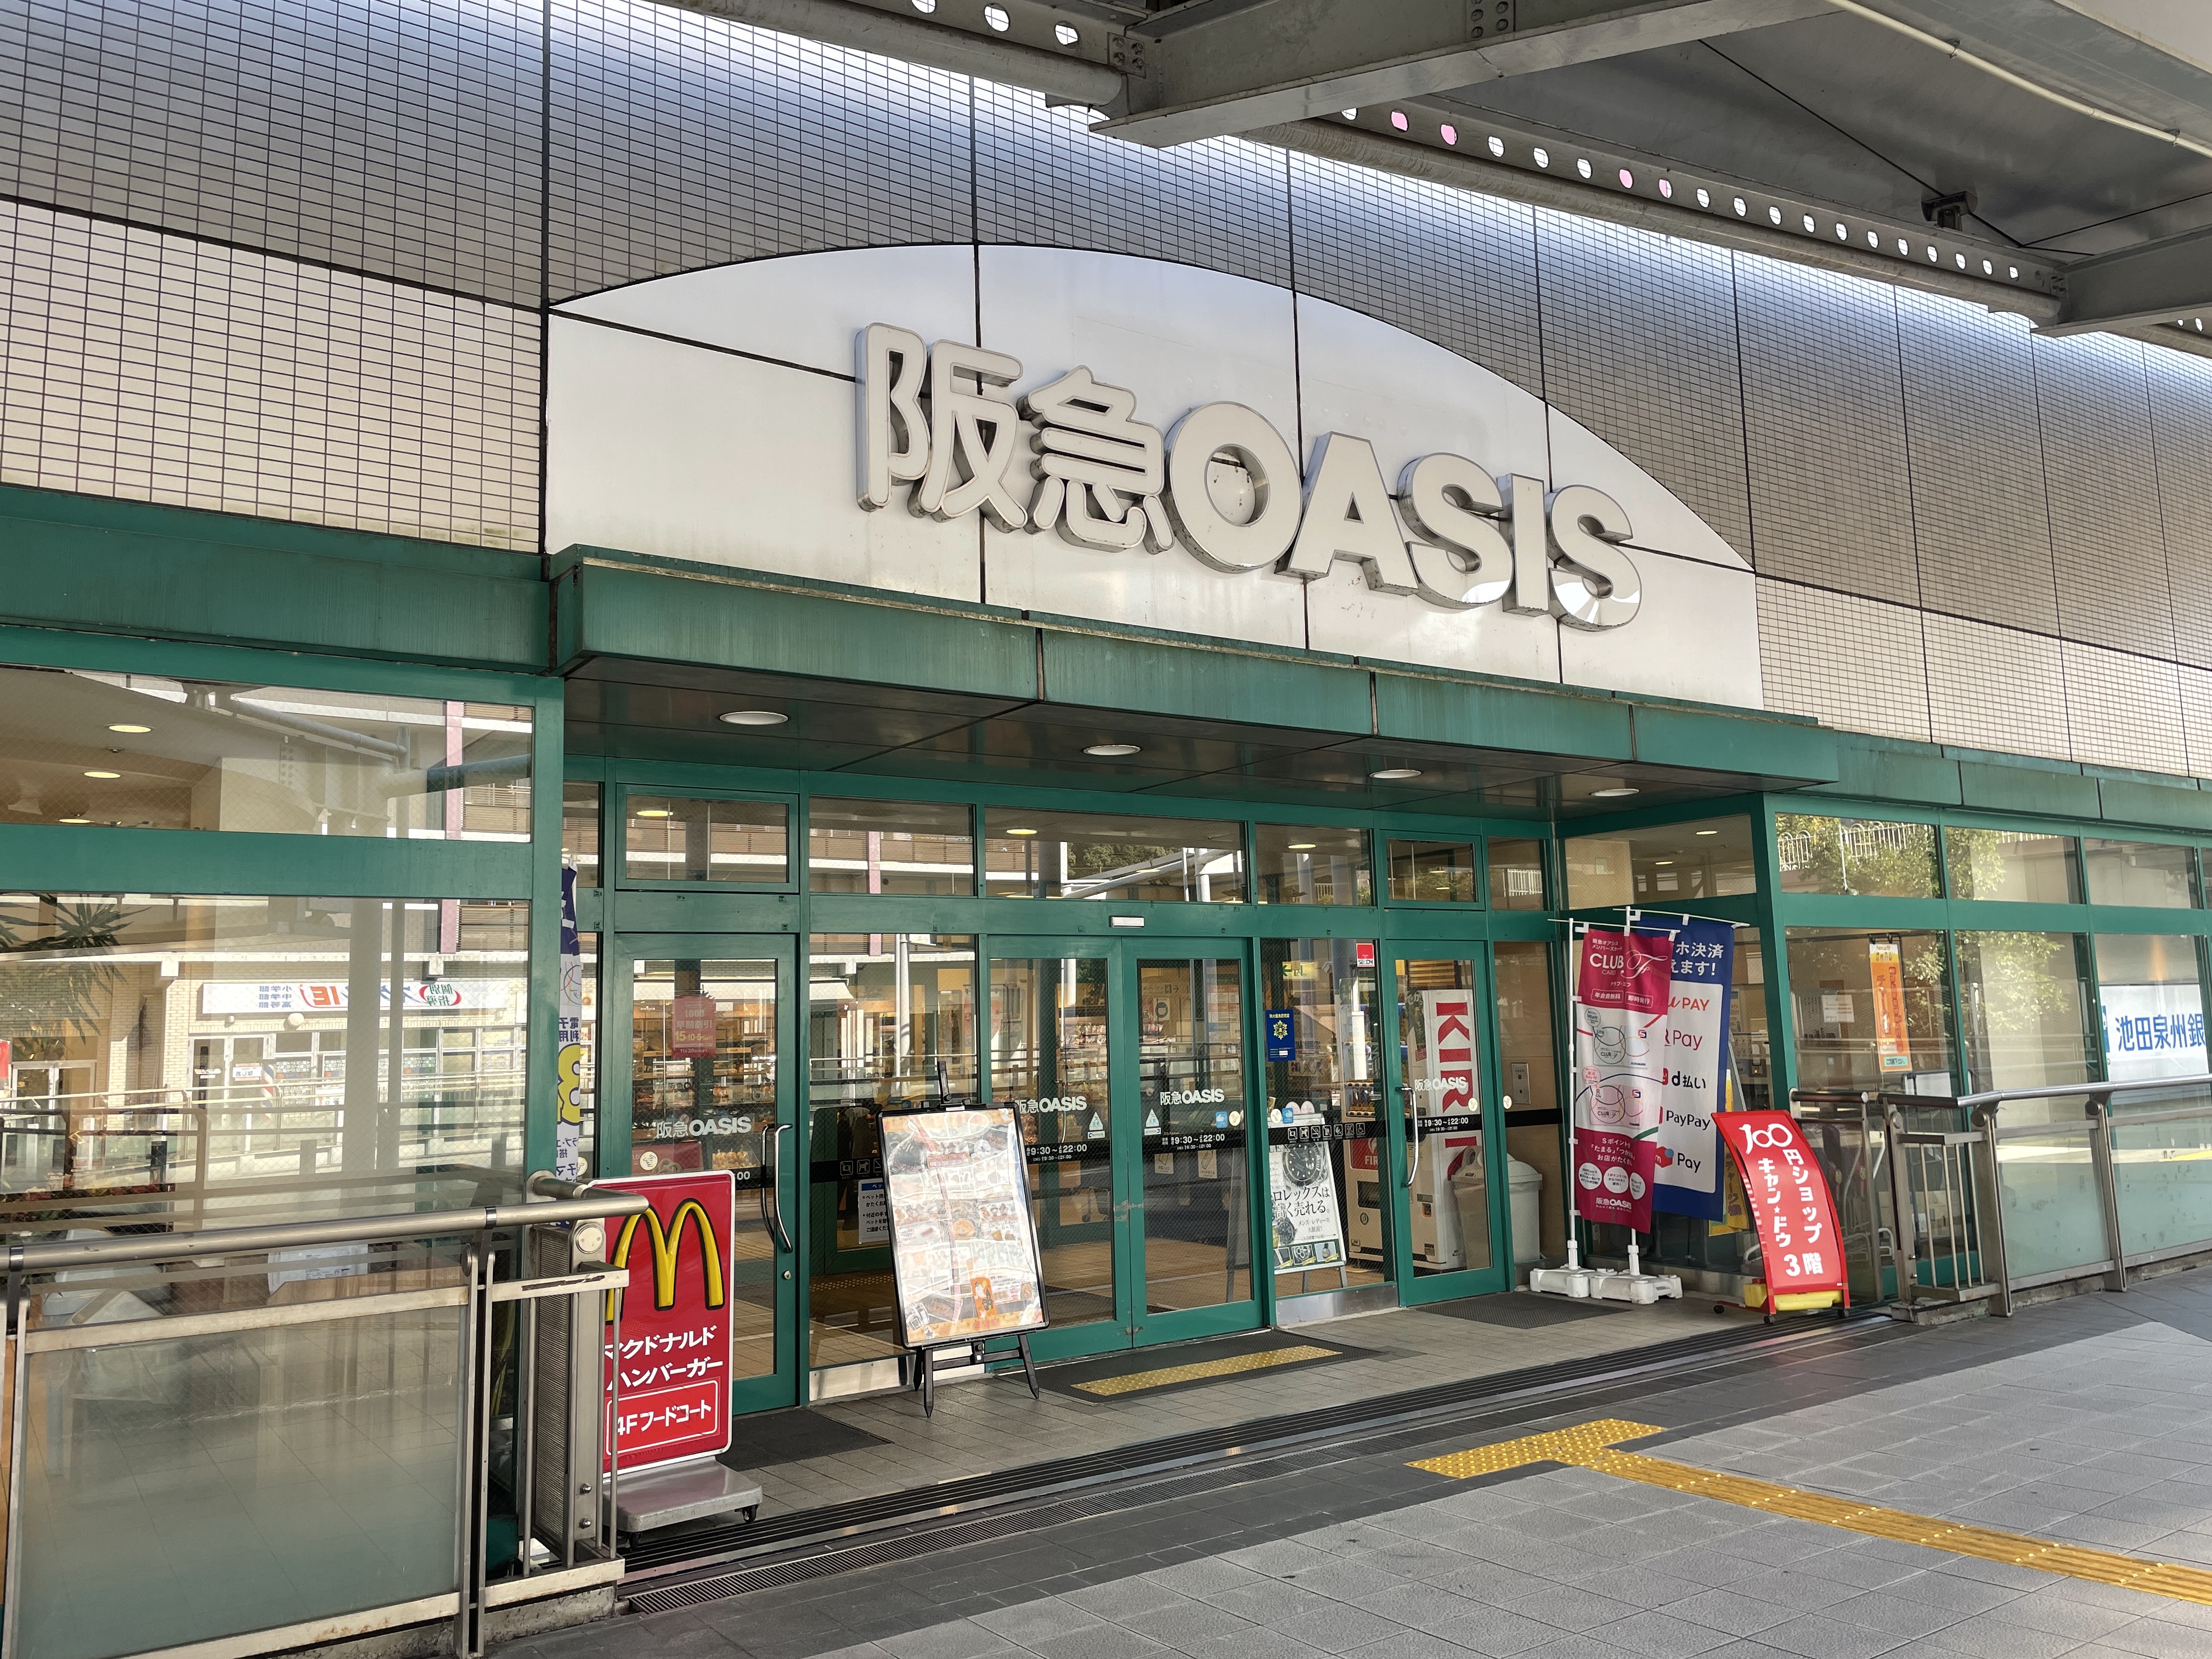 阪急オアシスさんが入っている”エコールなじお”<br />
駅のホームからも見えます。